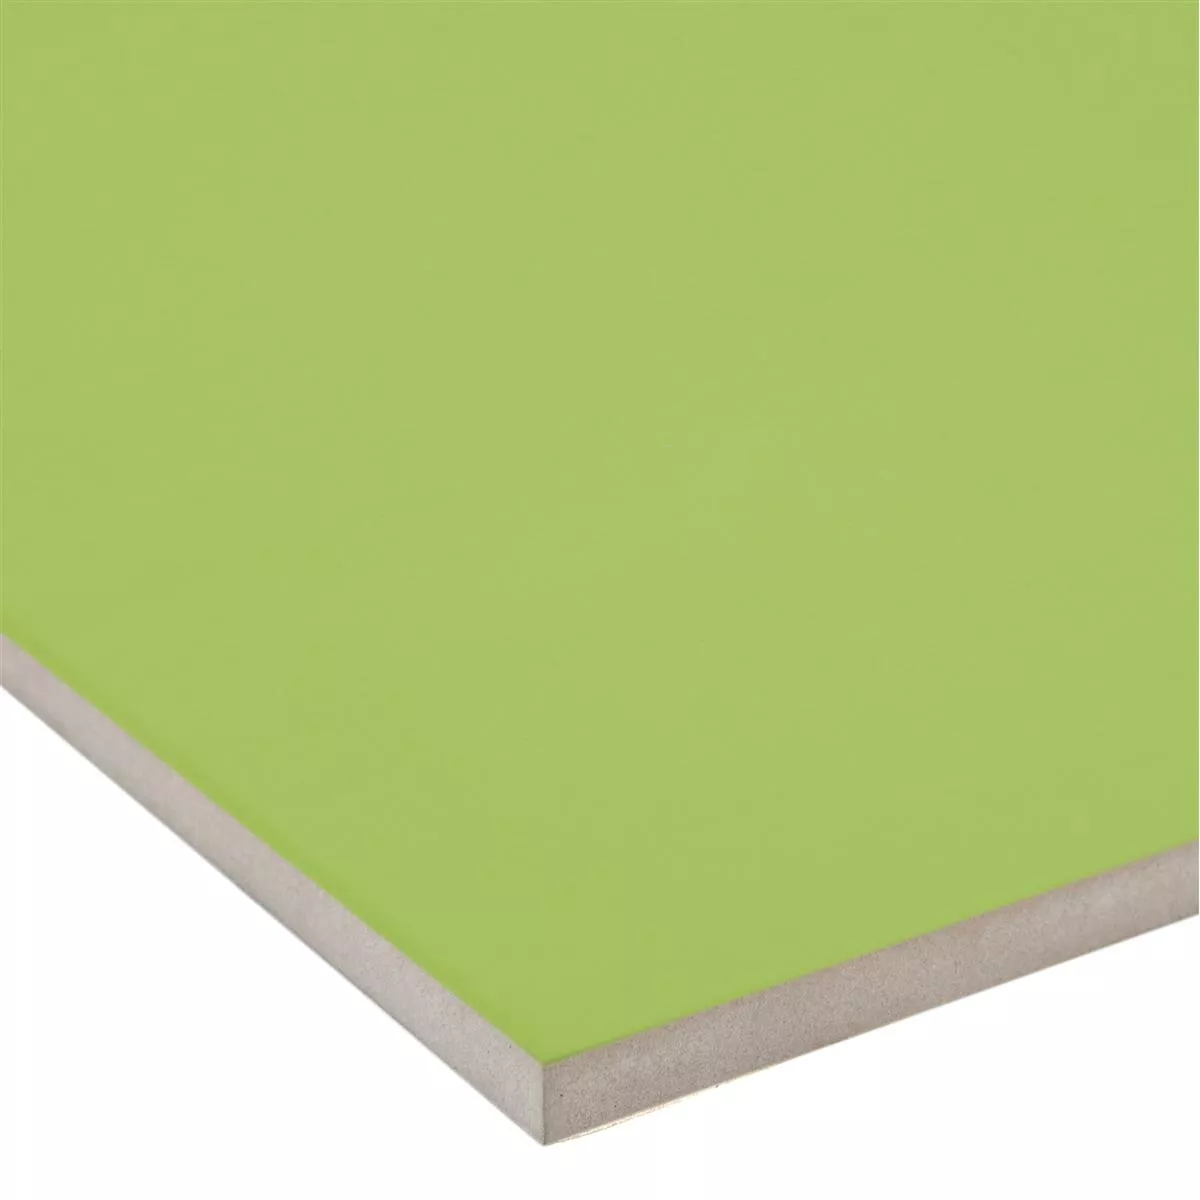 Wall Tiles Contento Green 25x50cm